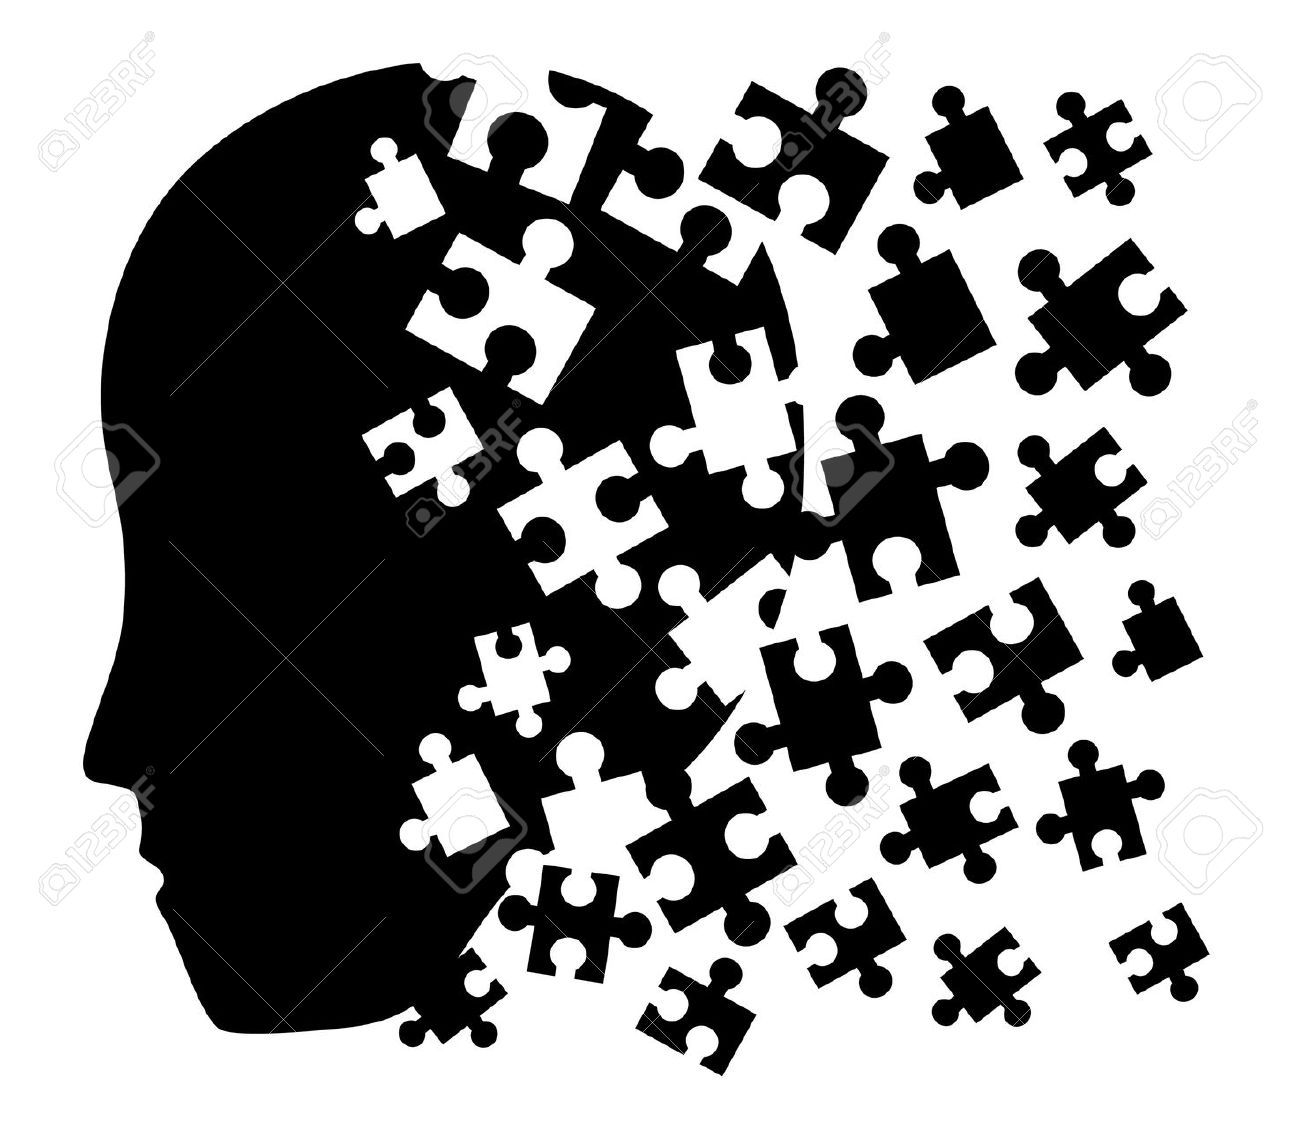 psychology clipart puzzle